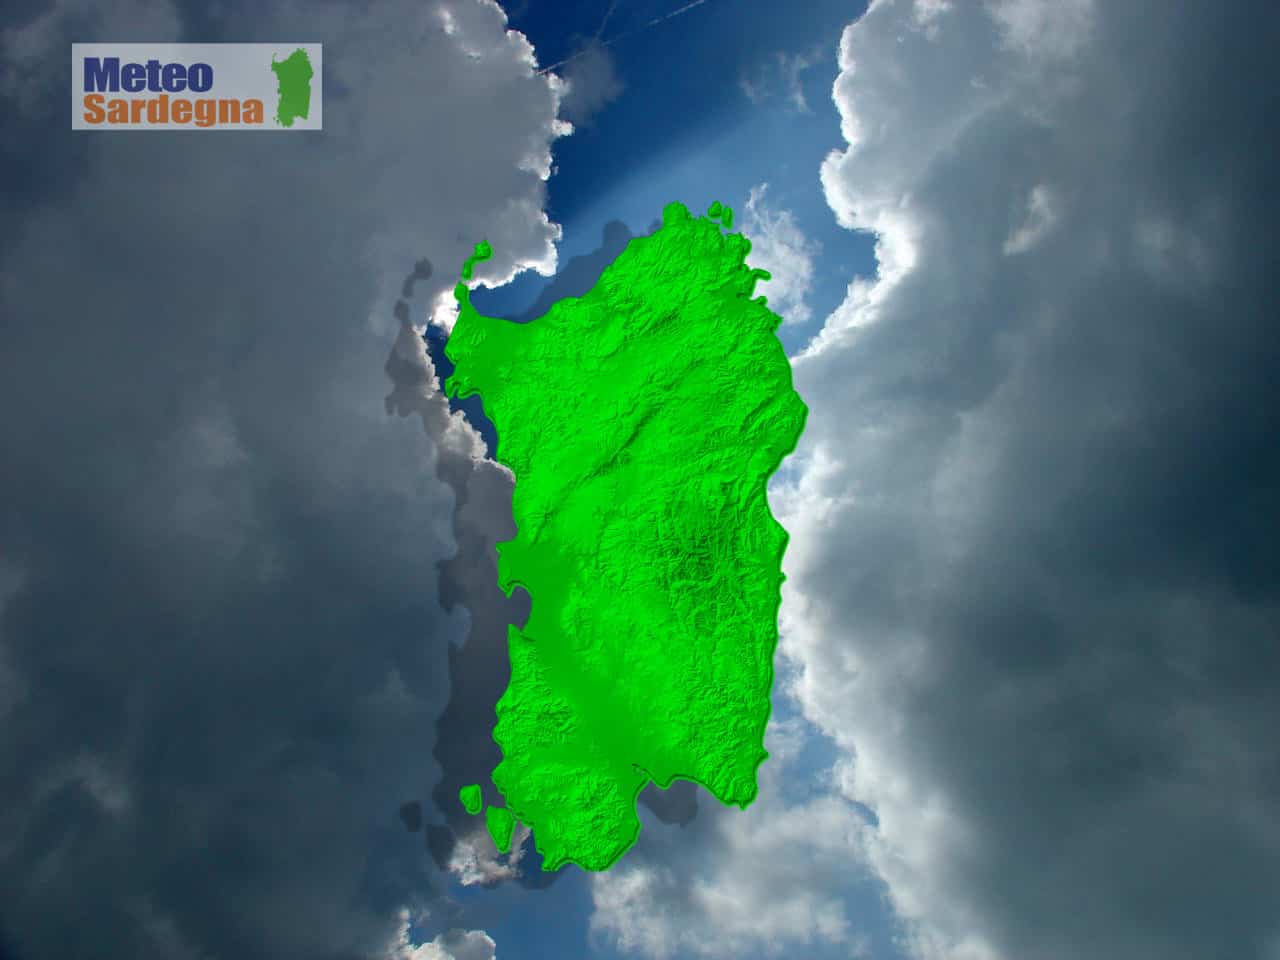 meteo sardegna 11 - Sardegna, METEO in graduale miglioramento. Su le temperature